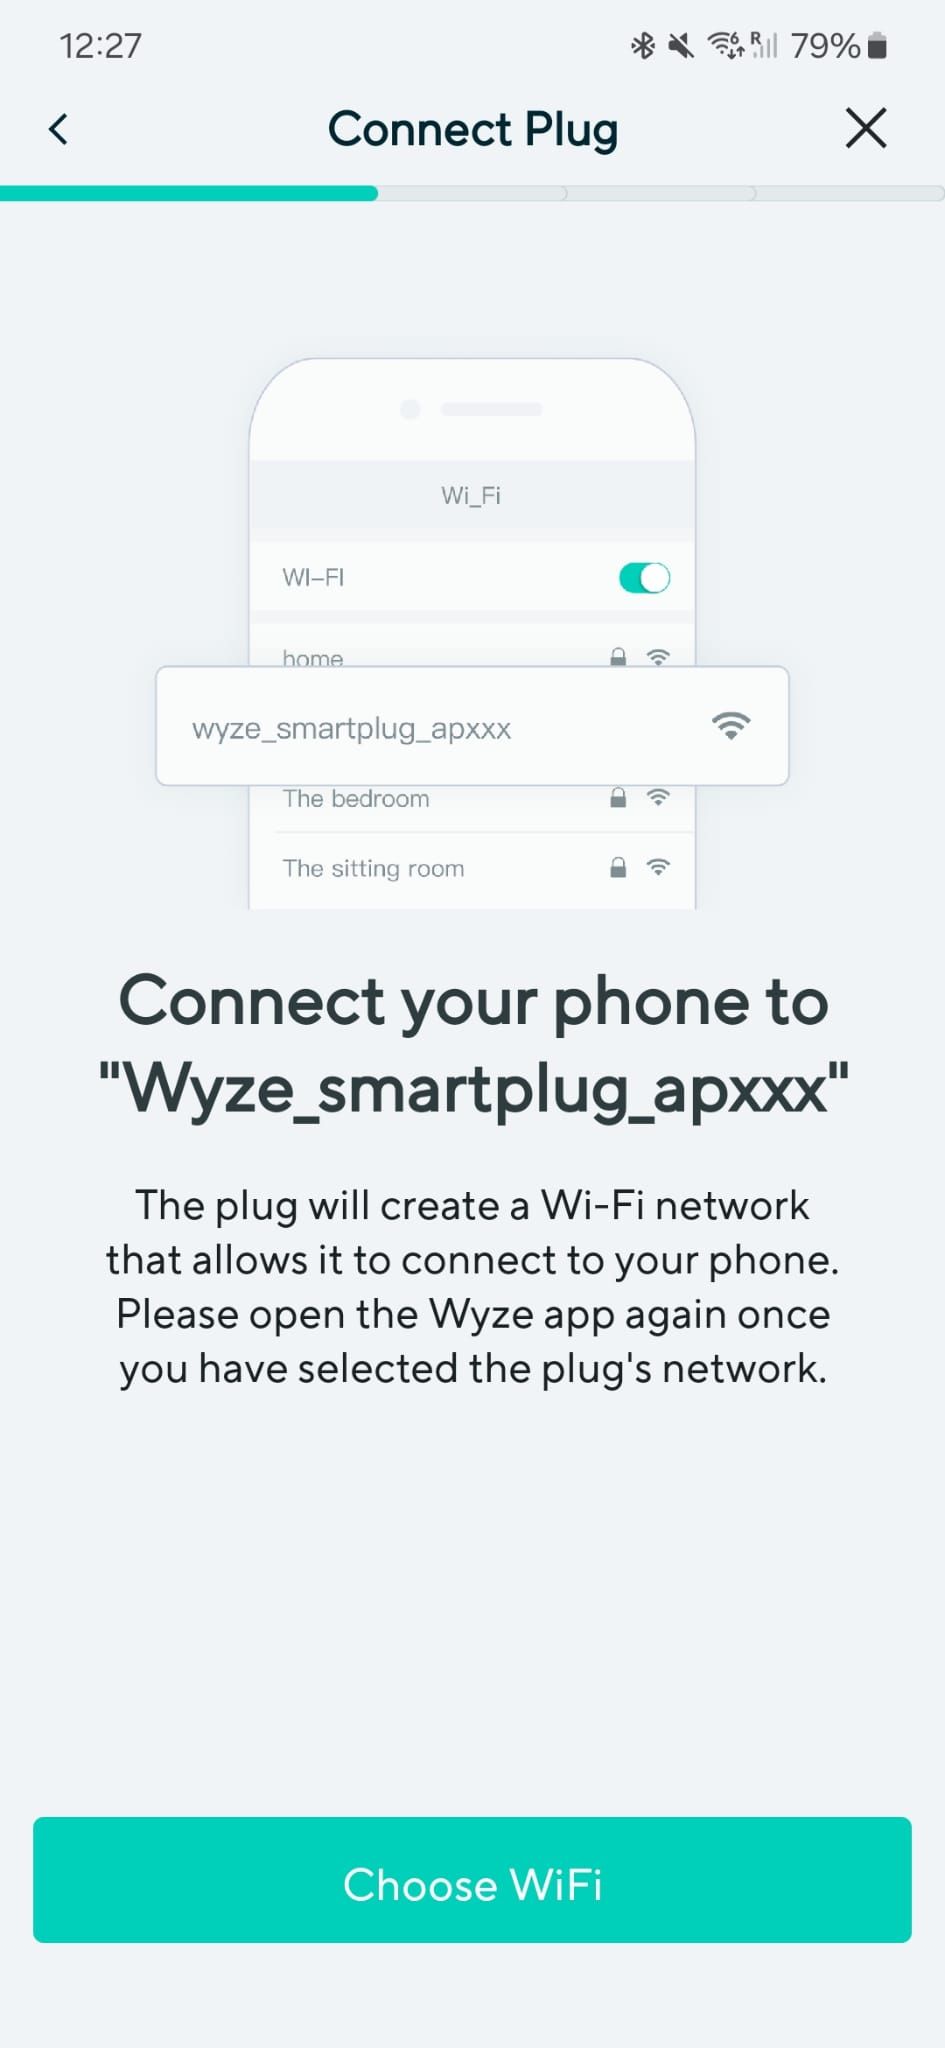 لقطة شاشة لتطبيق Wyze توضح العملية المحددة لـ Wyze Plugs قبل عام 2021